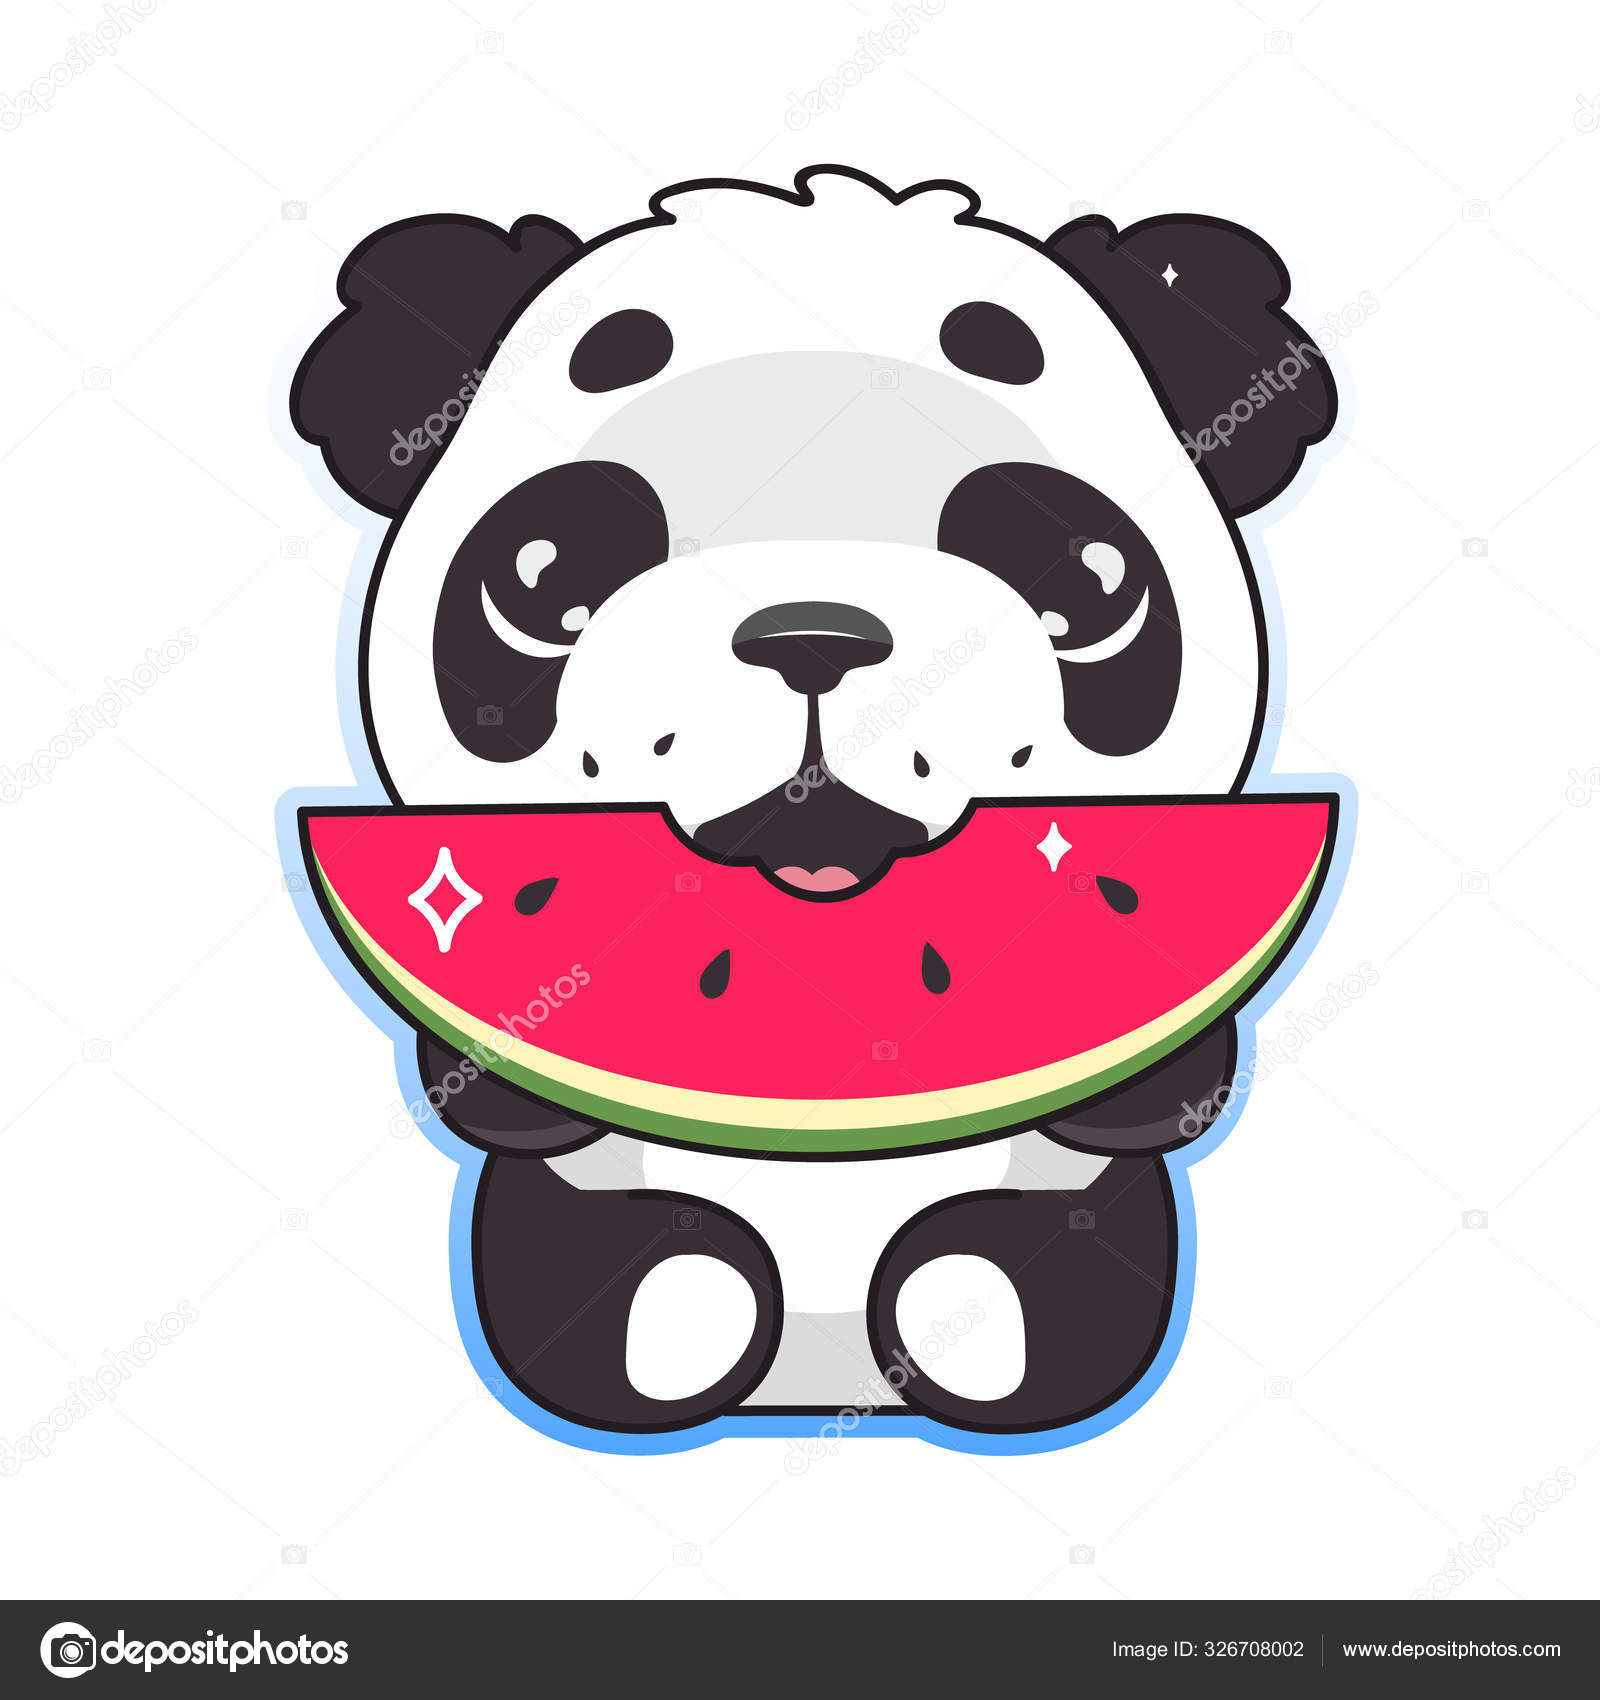 Ilustração em aquarela de um panda comendo uma melancia contra um